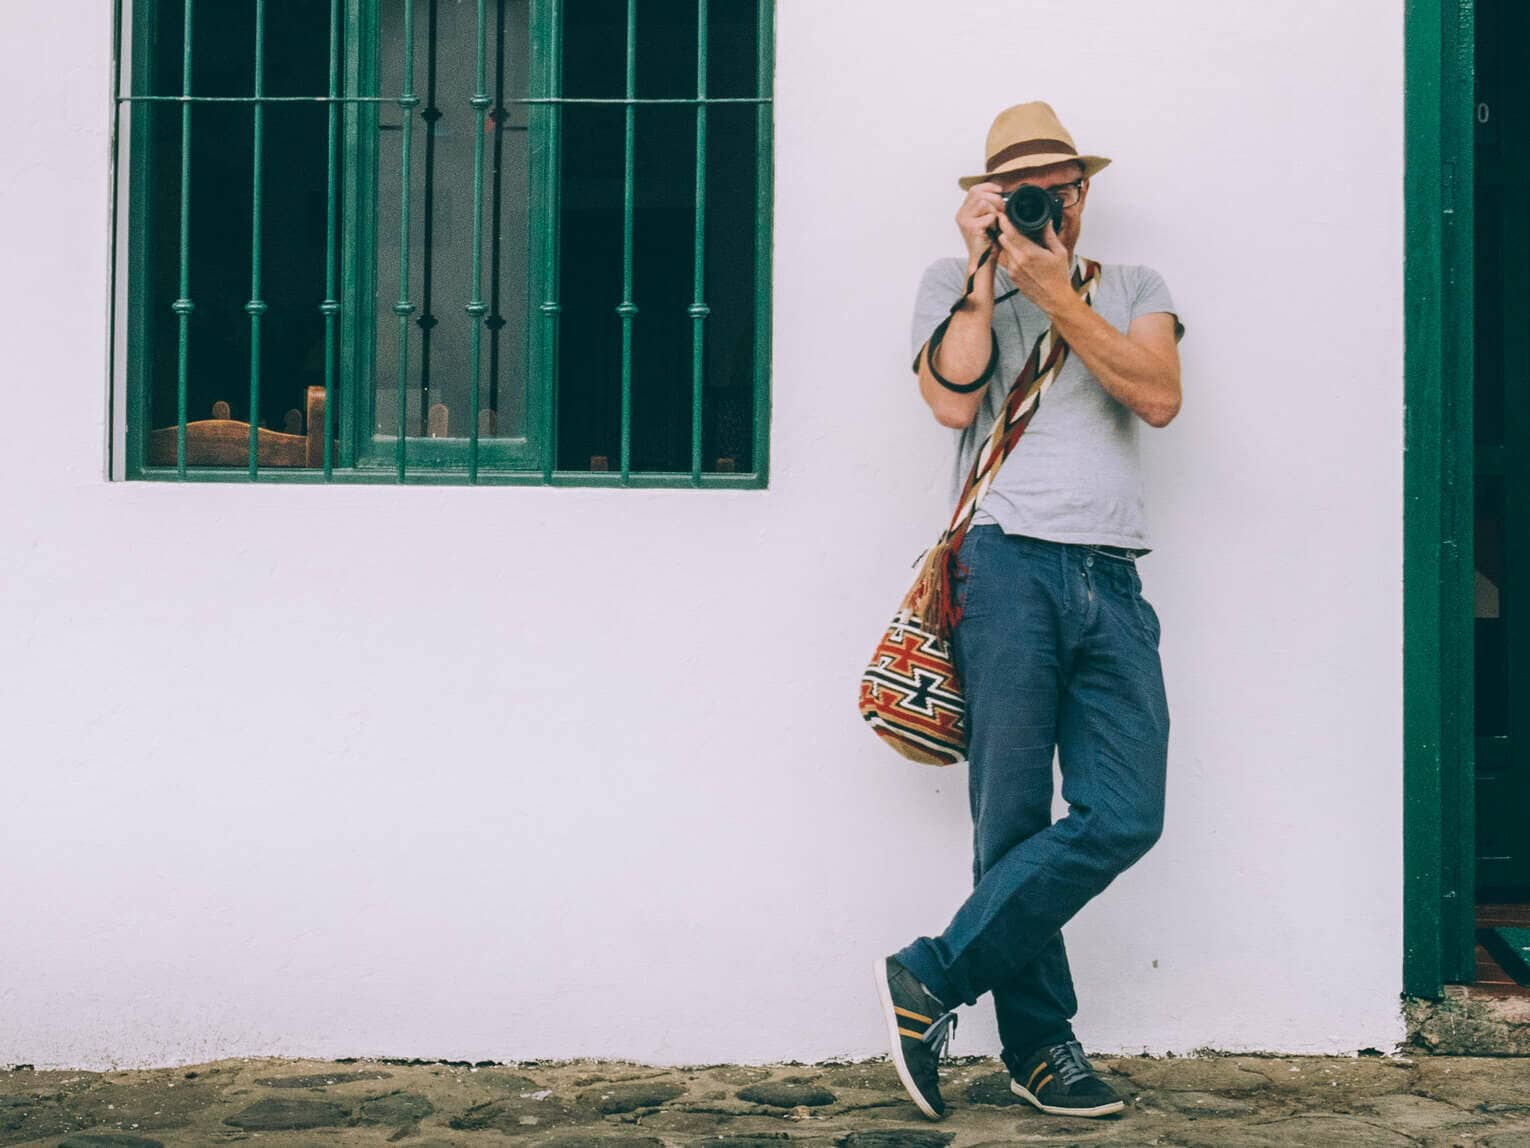 Quels risques pour son matériel photo lors d’un voyage en Colombie ?